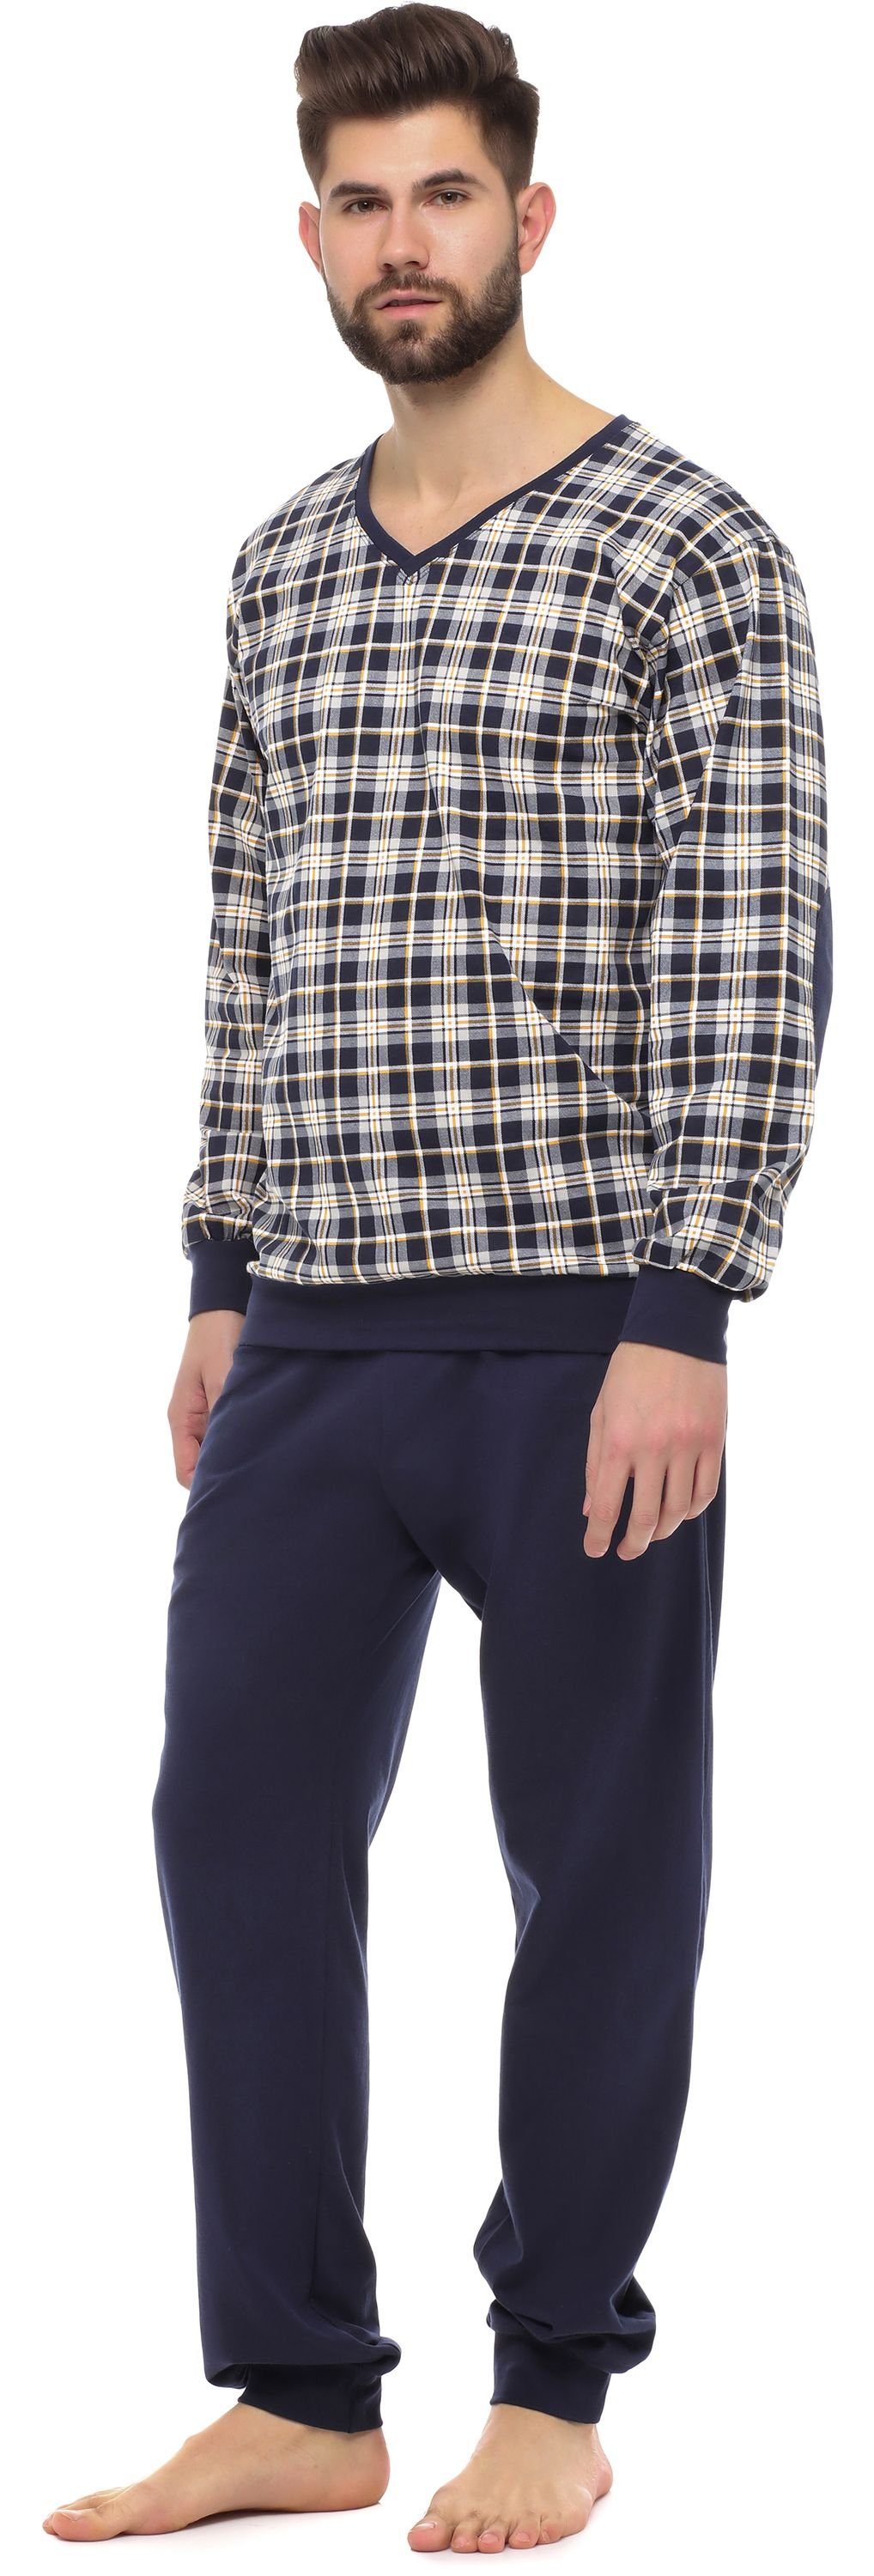 Timone Schlafanzug Set Nightwear Herren Schlafanzug TI30-107 mit Lang Bündchen Baumwolle Marine Kariert1